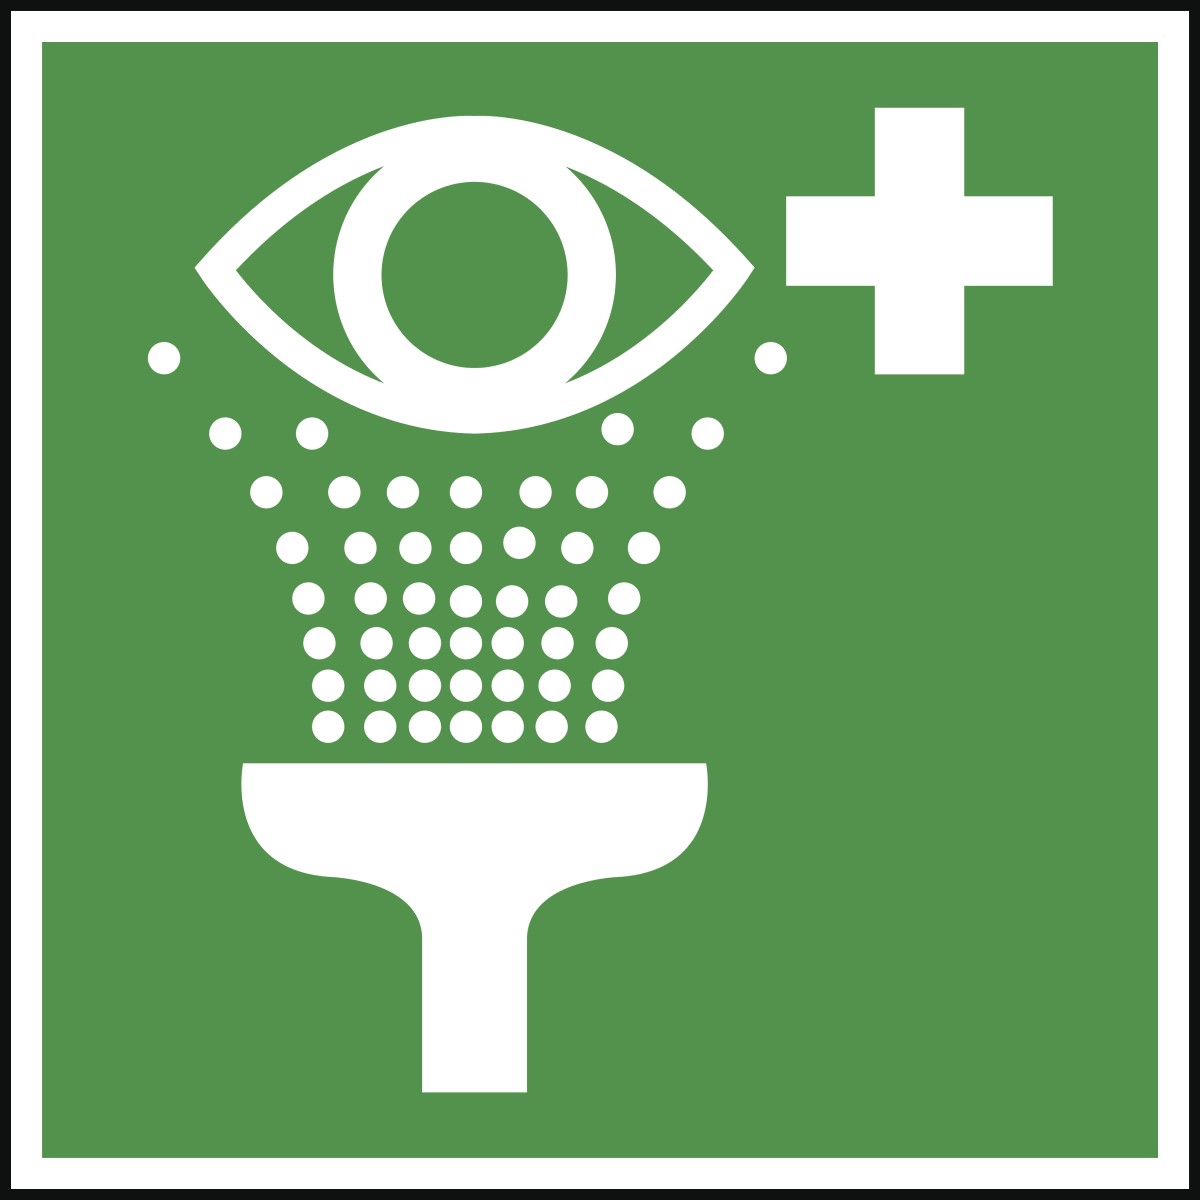 Das grün-weiße Hinweisschild für Augenspülungen am Arbeitsplatz